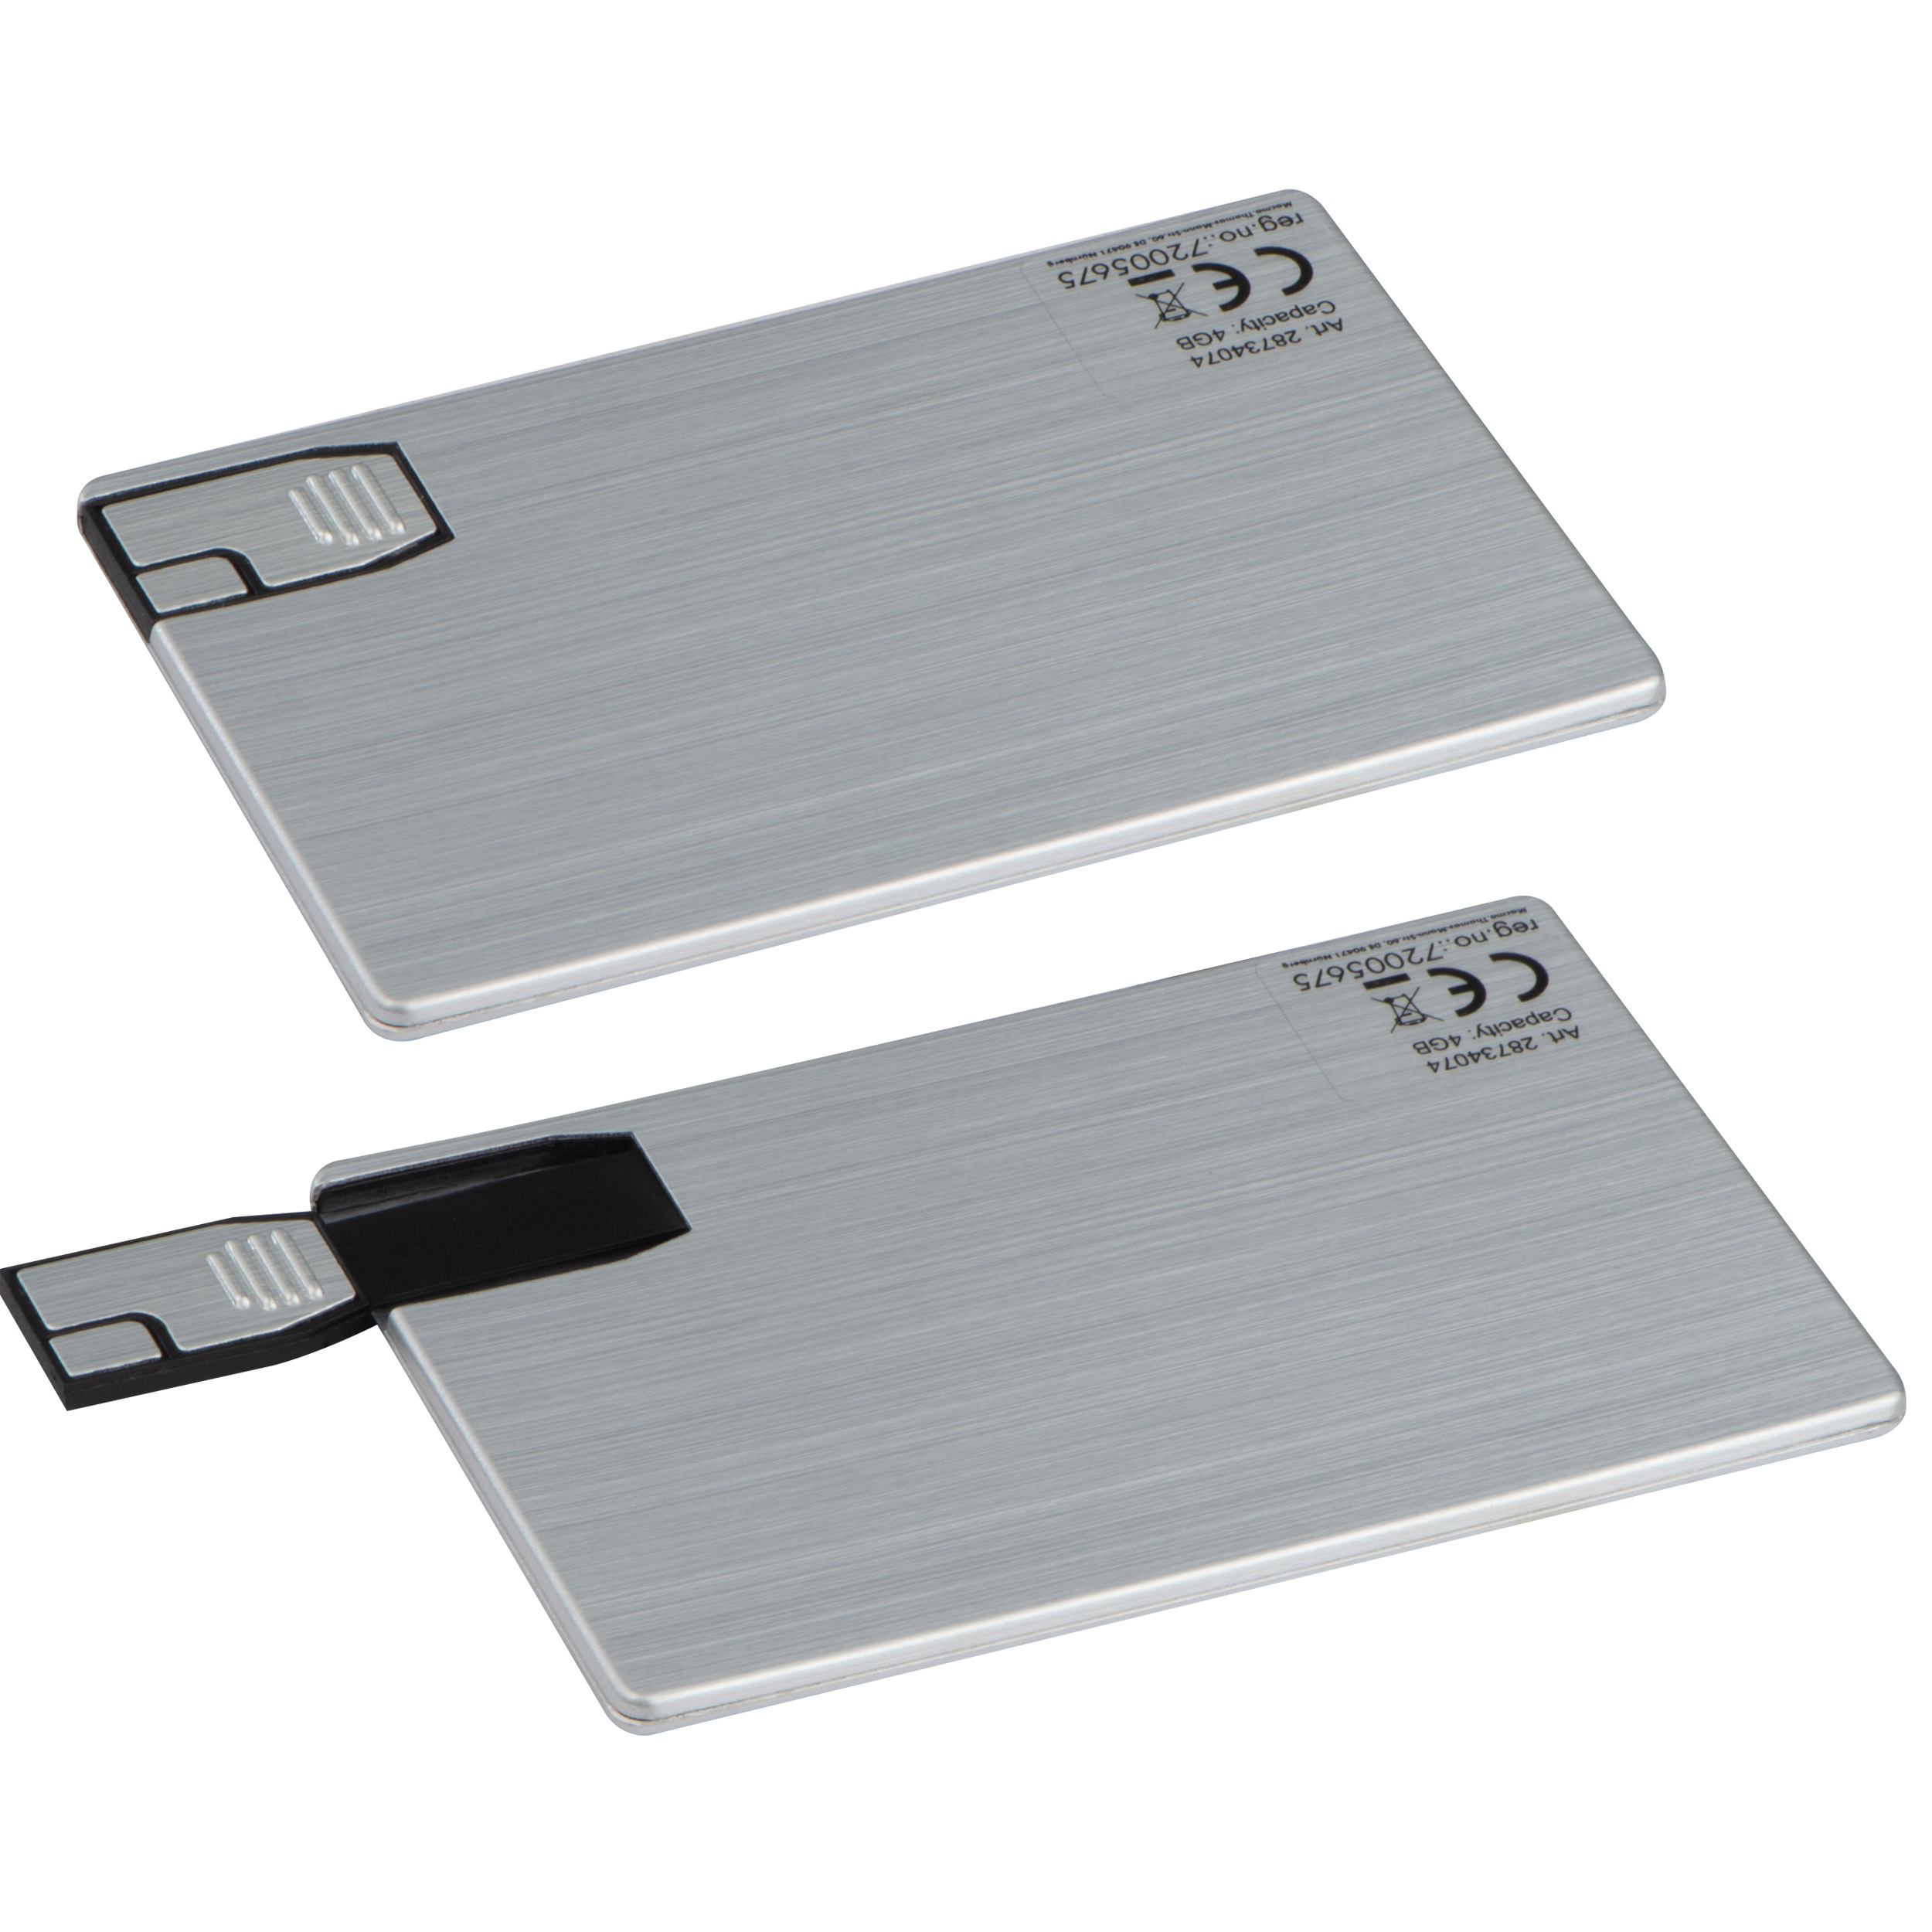 Carta USB in metallo - San Gusmè